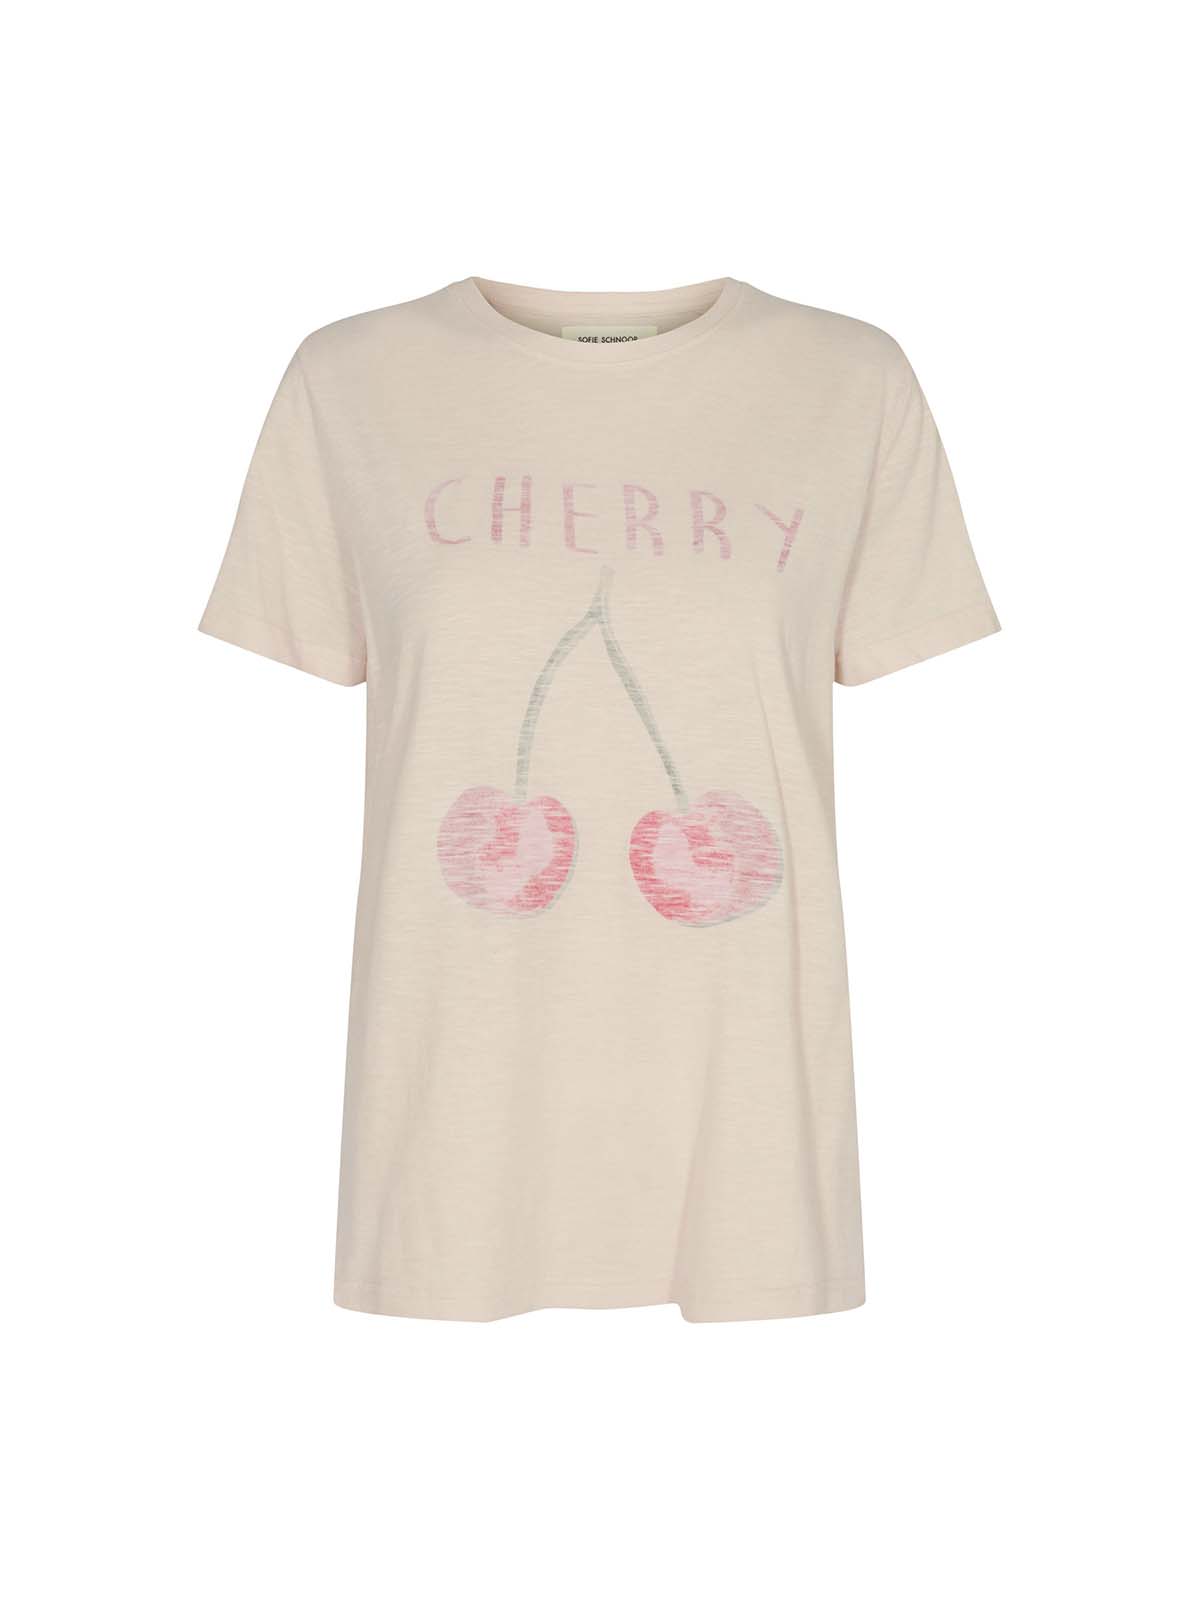 dash glimt lægemidlet T-shirt med cherry fra Sofie Schnoor - Shop på GUNDTOFT.dk